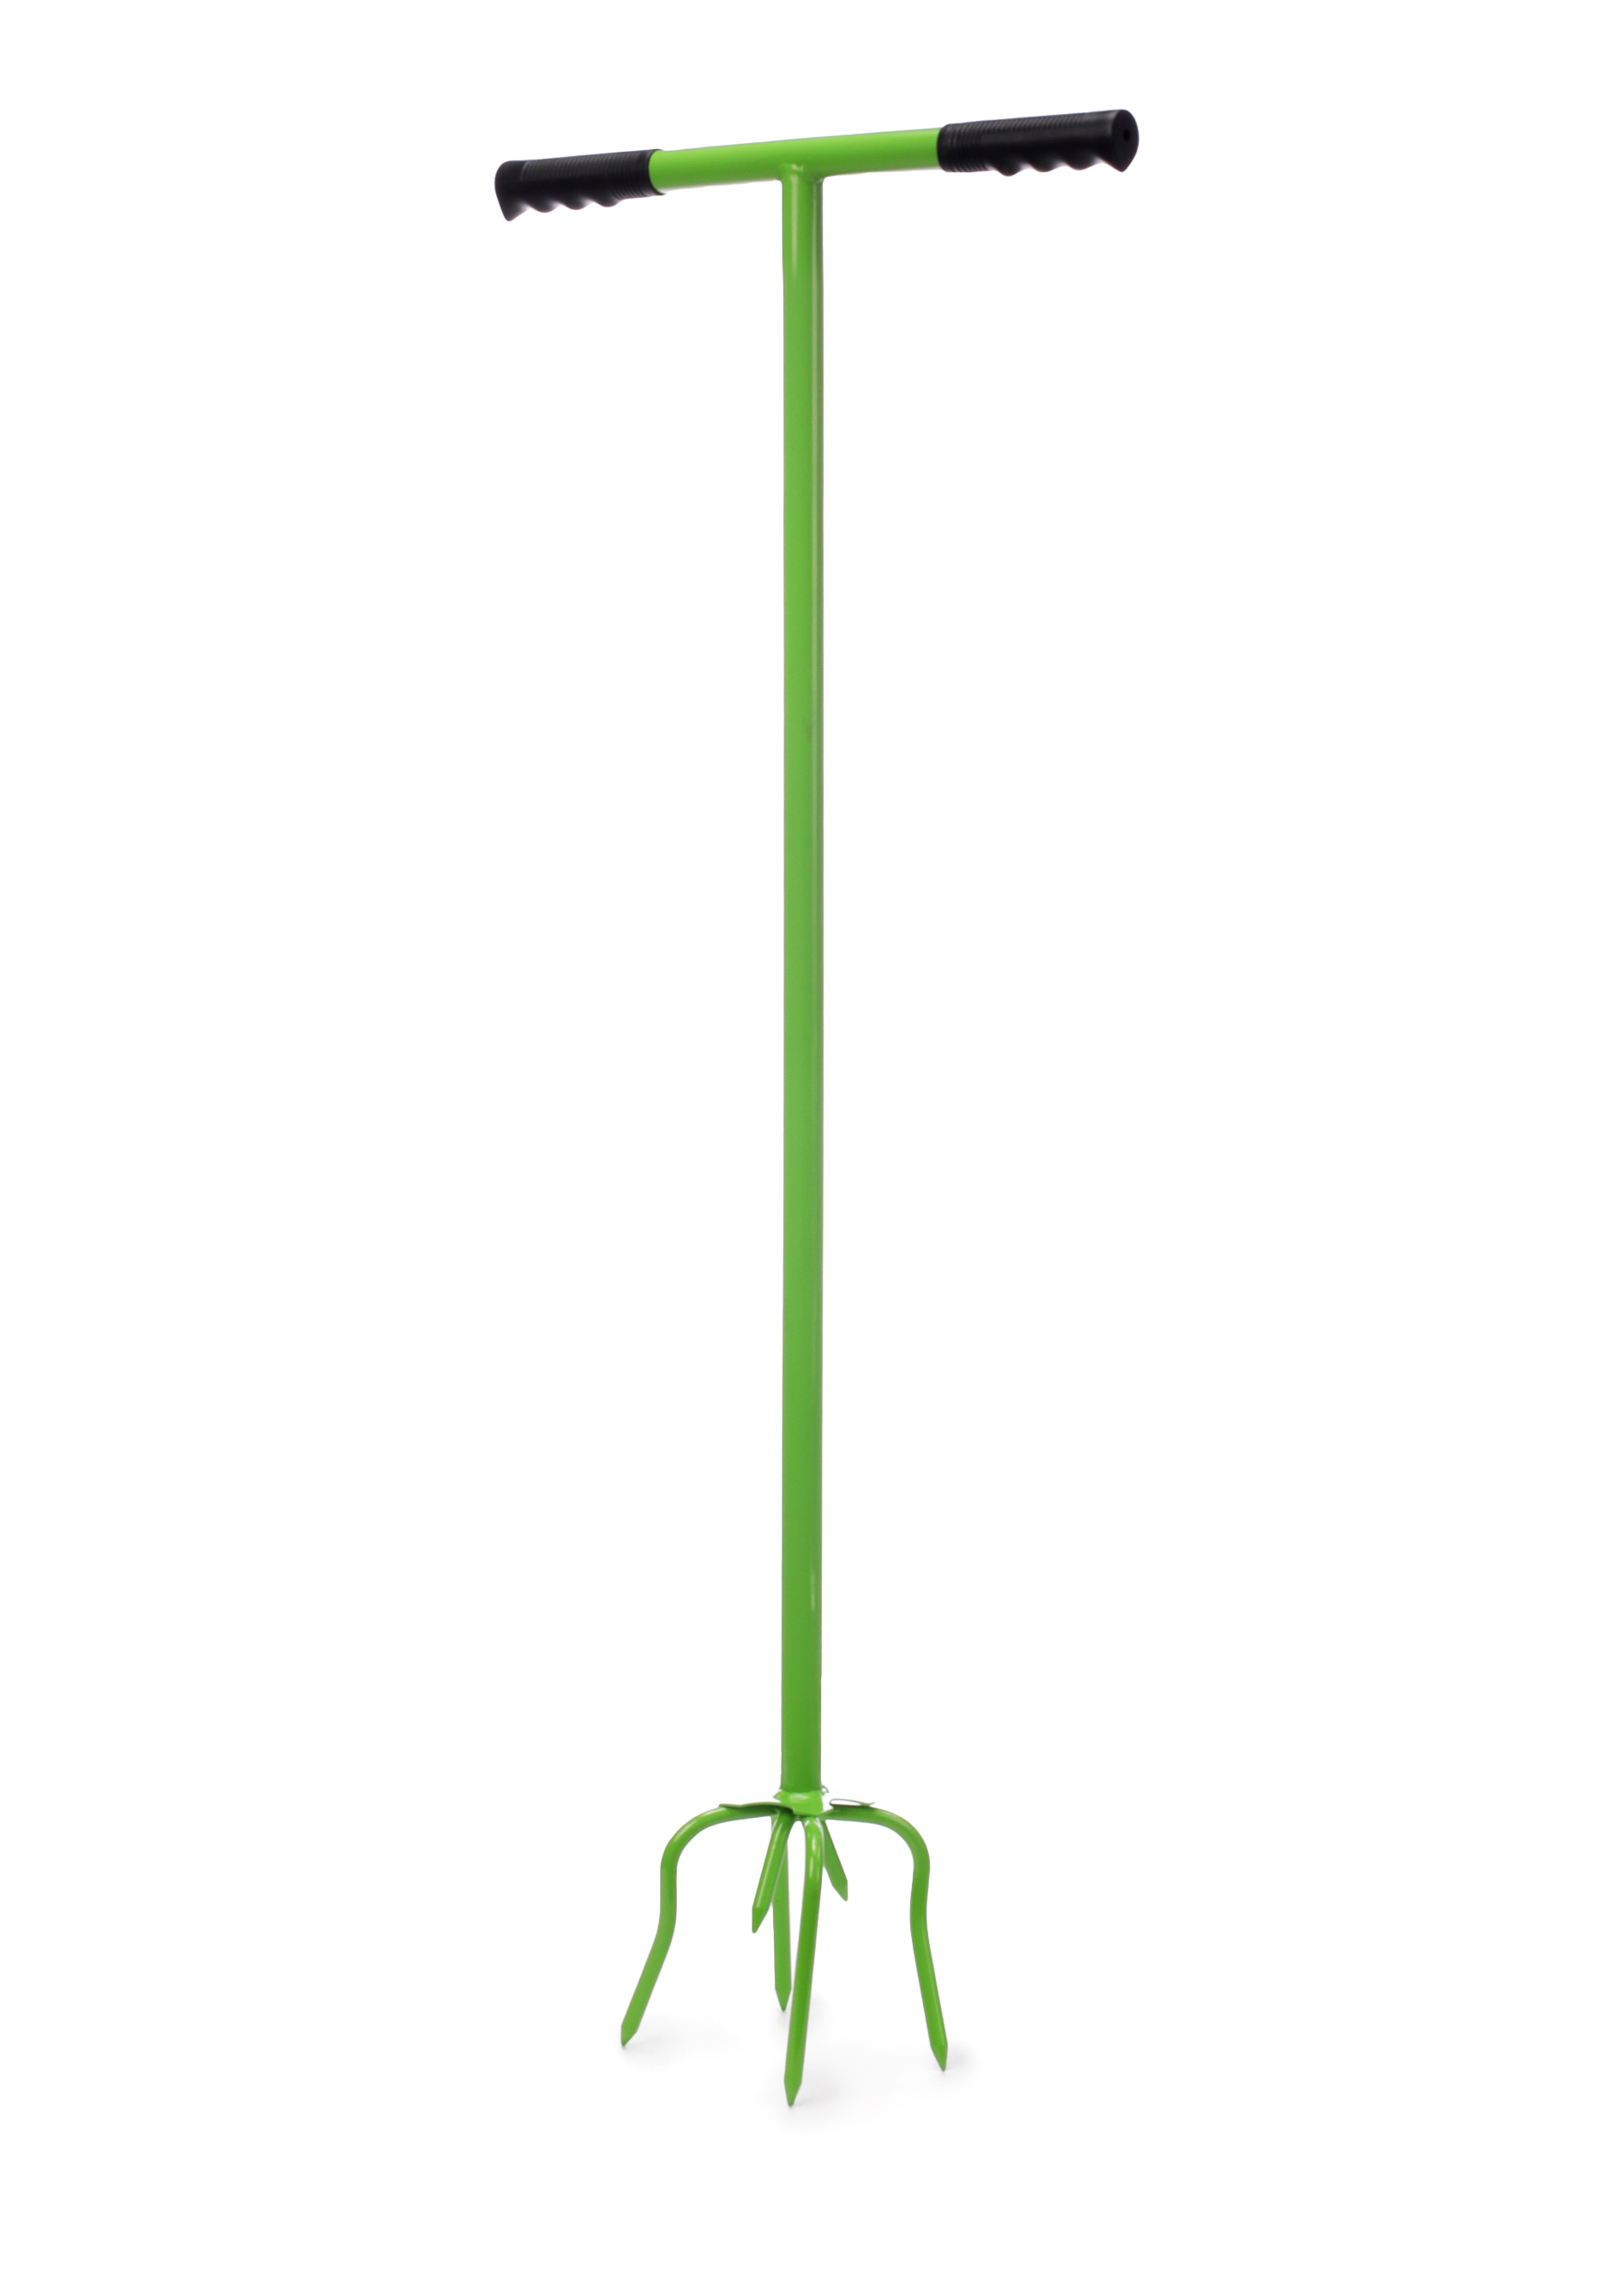 Садовый культиватор ЕВРОГАРАНТ, цвет зеленый, размер 14*38*99